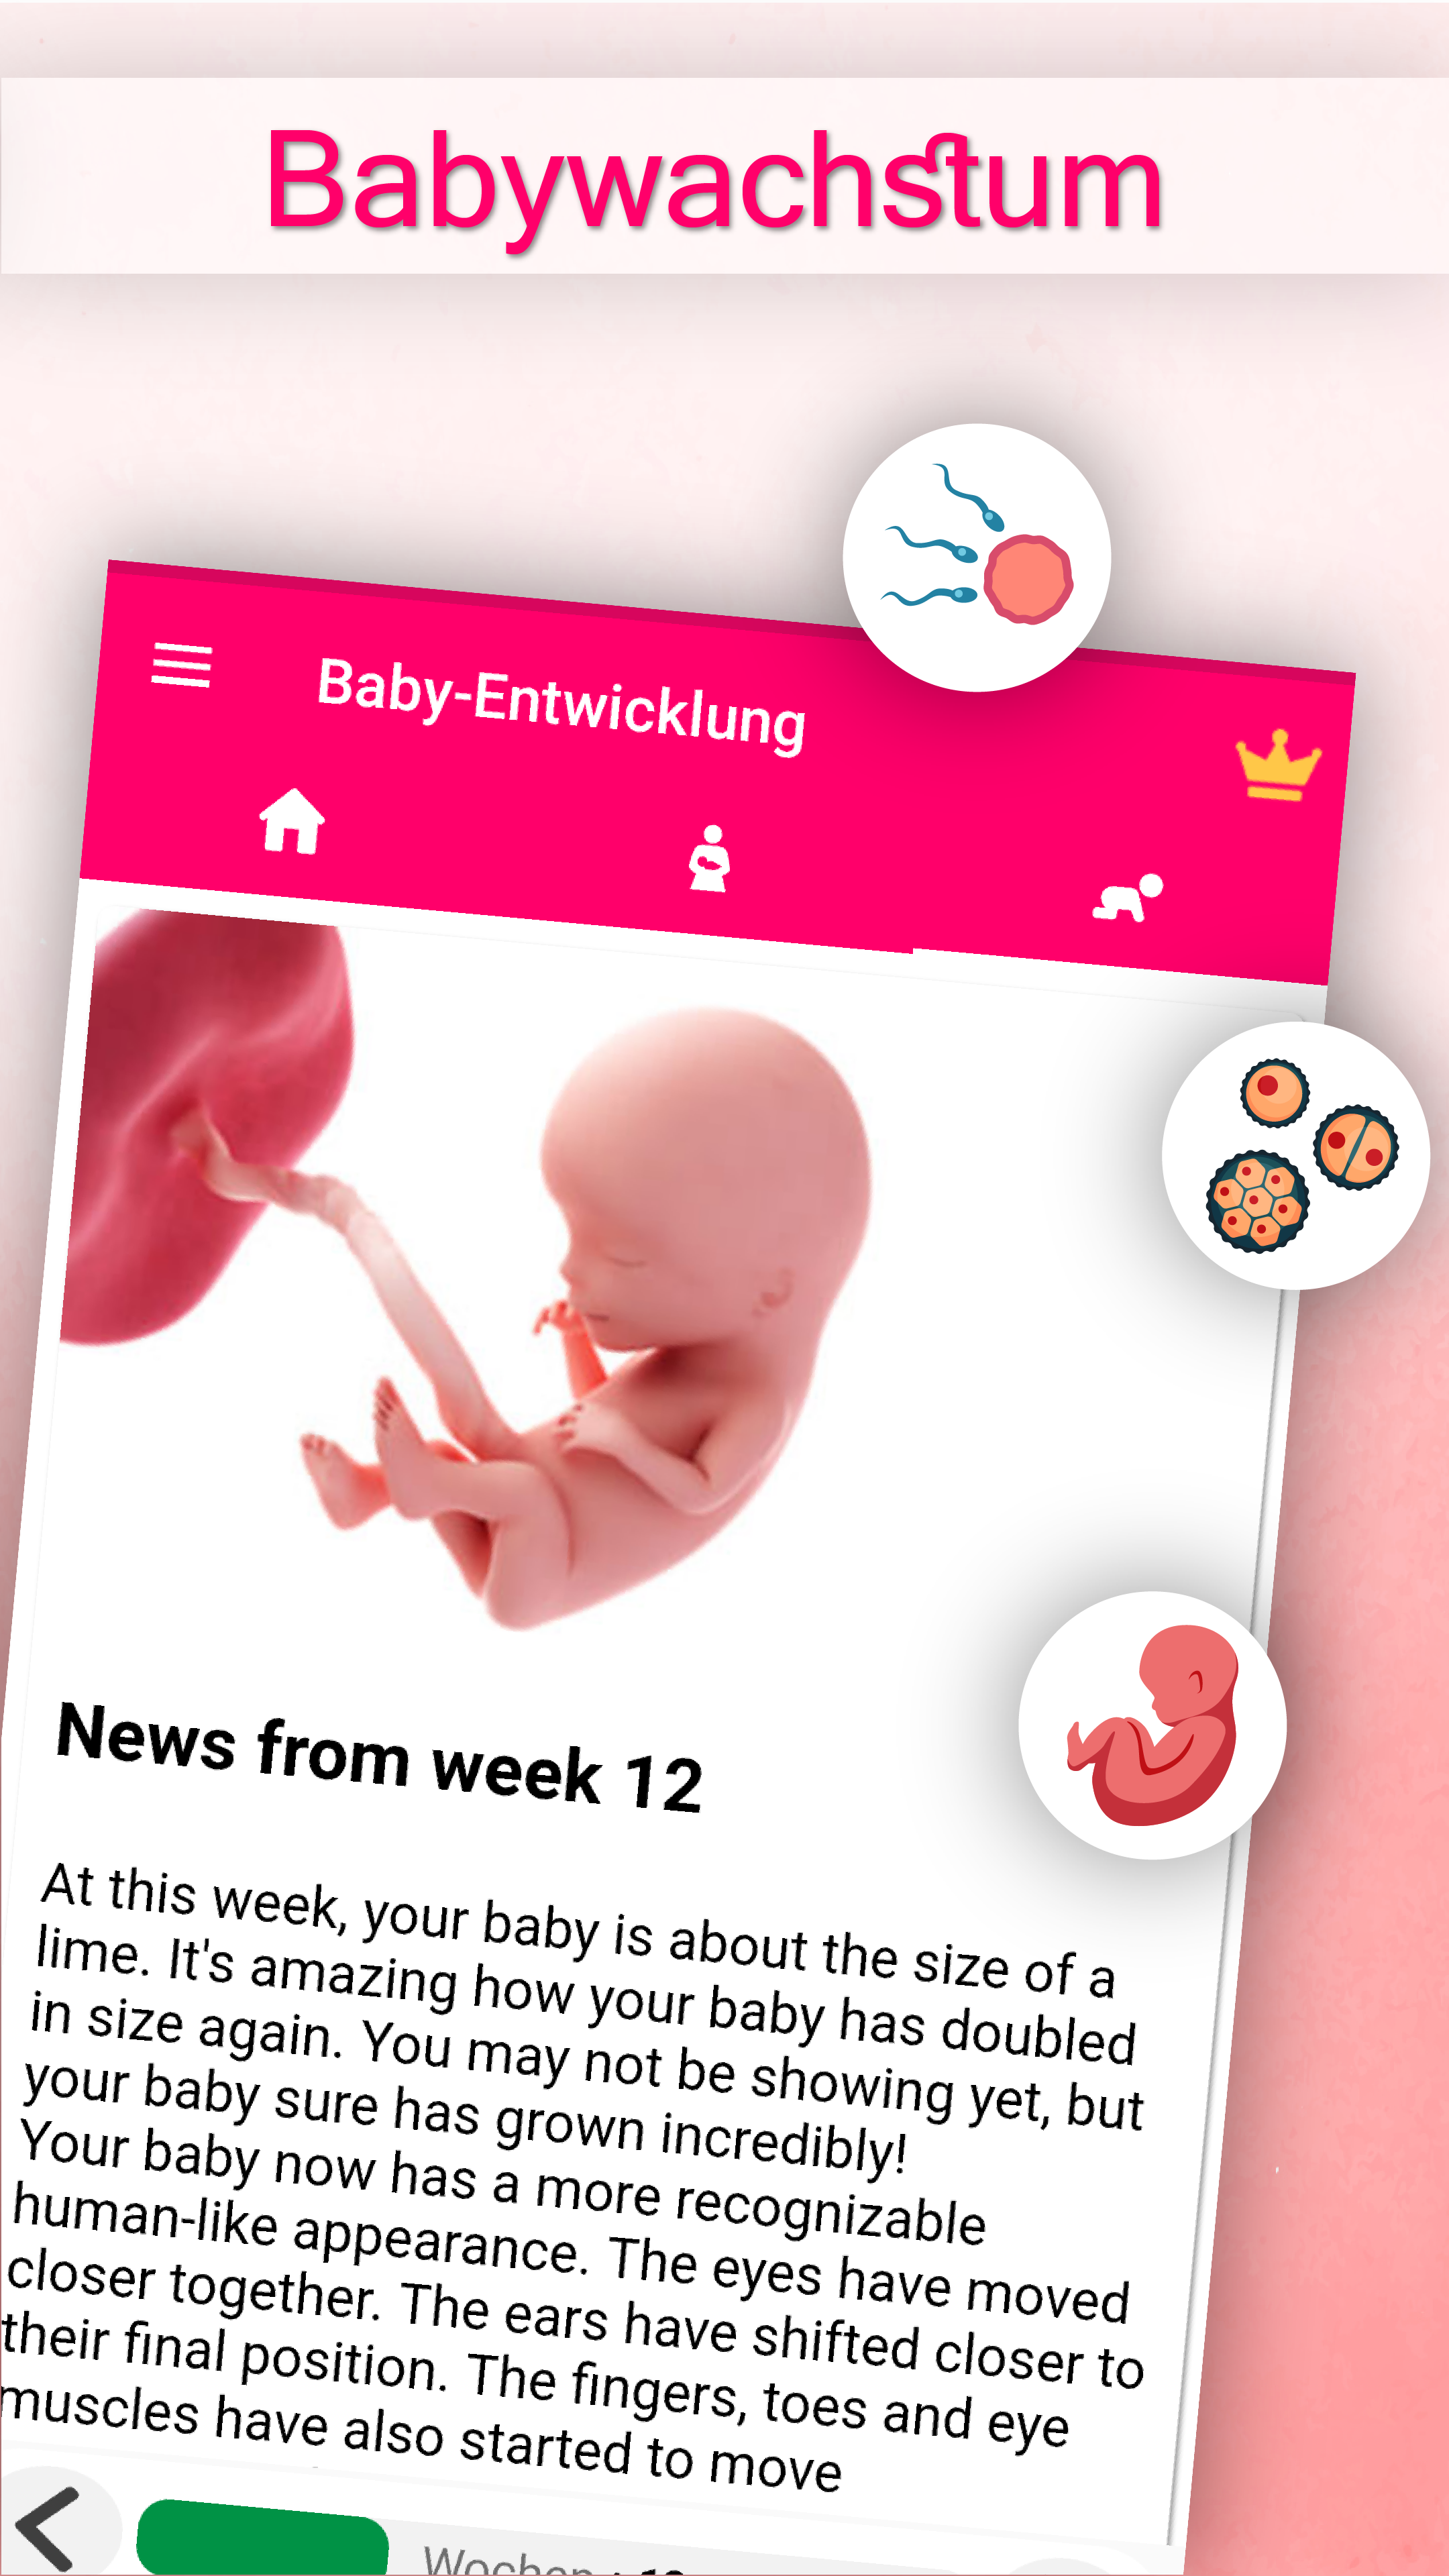 Schwangerschafts - SSW Rechner und Wochen Kalender APK 23.8 für Android  herunterladen – Die neueste Verion von Schwangerschafts - SSW Rechner und  Wochen Kalender APK herunterladen - APKFab.com